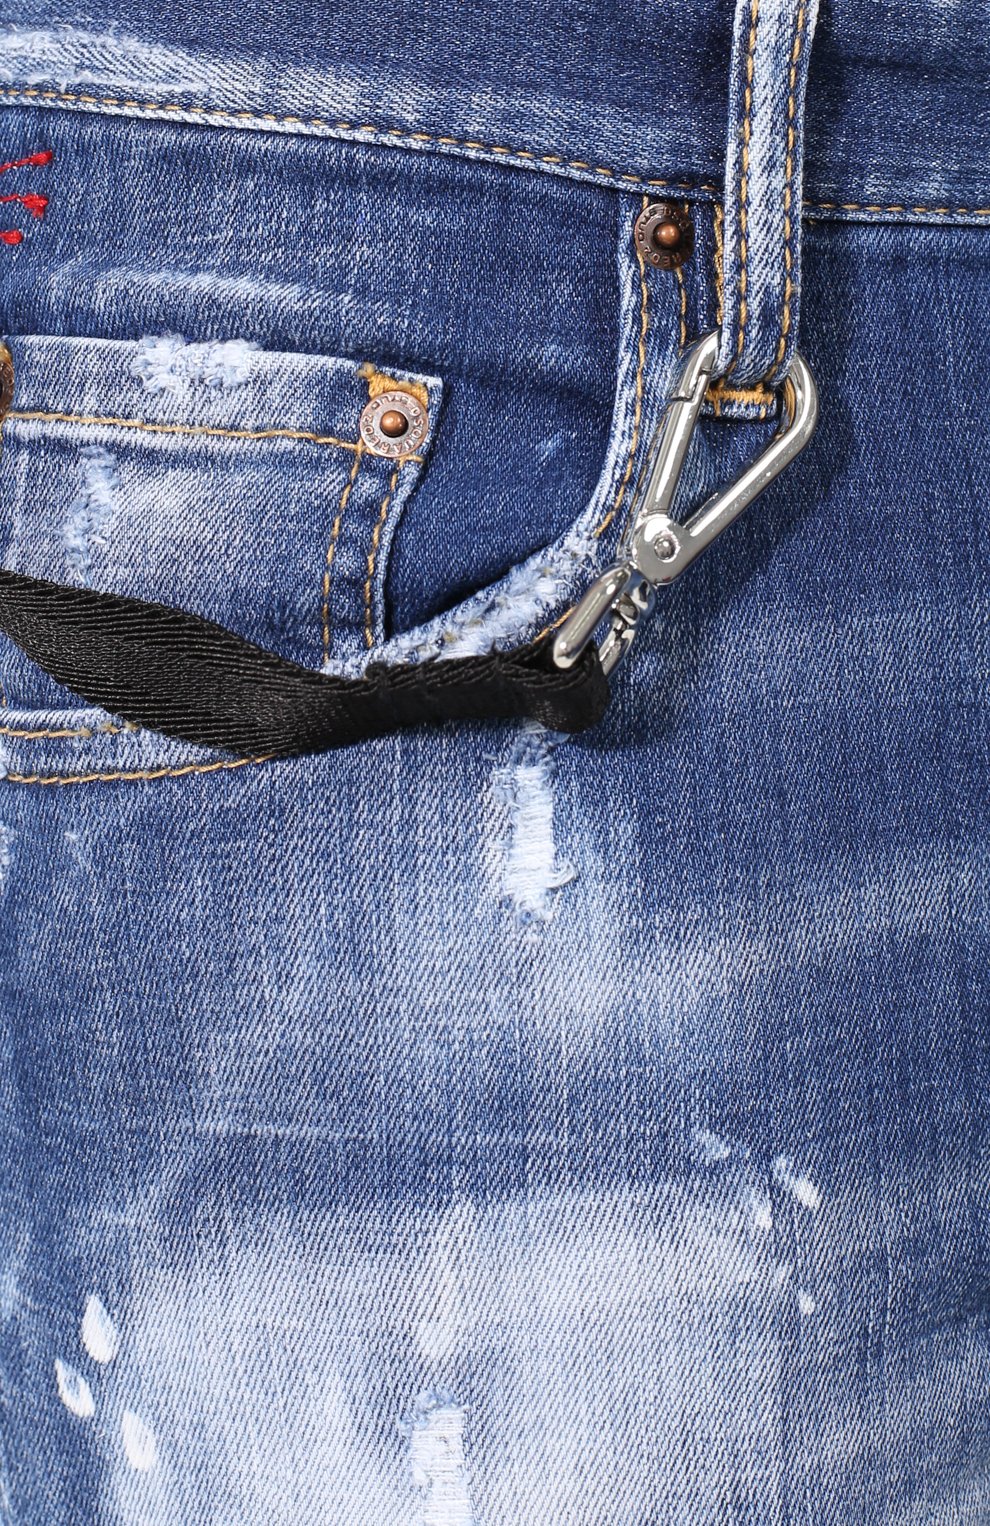 Мужские синие джинсы-скинни DSQUARED2 купить в интернет-магазине ЦУМ, арт.S74LB0528/S30342